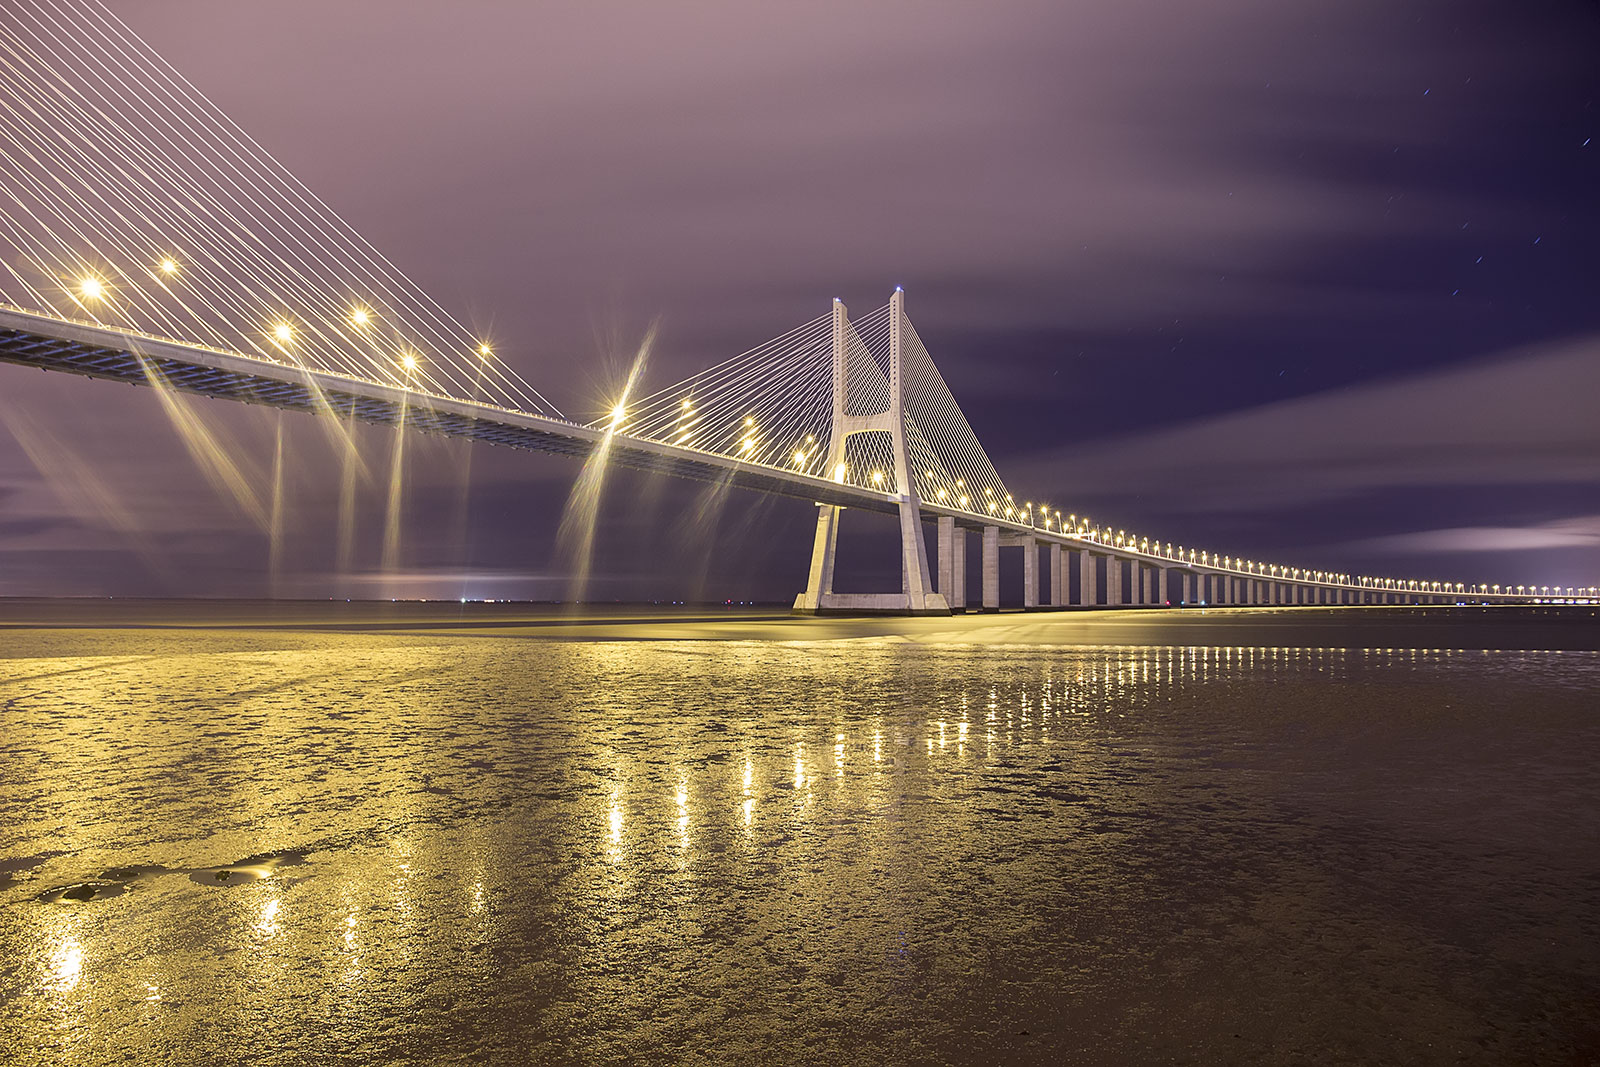 Fotografía nocturna puente Vasco de Gama, Portugal. Canon 6d, larga exposición,,Danilatorre,danilatorre, Dani Latorre, daniel Latorre